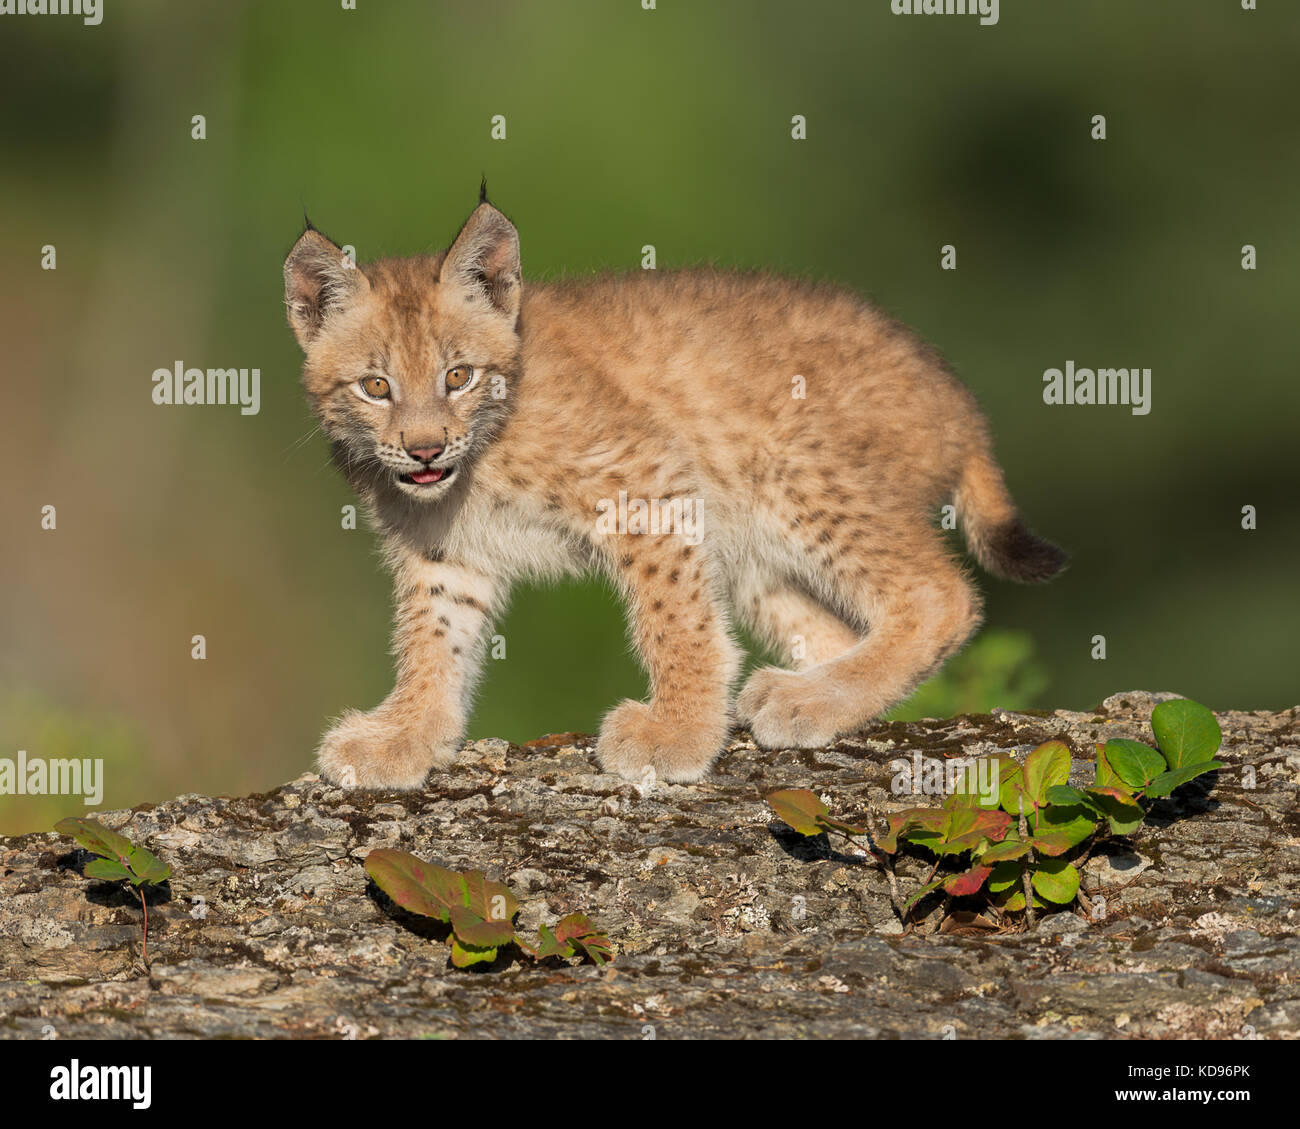 Siberiano gatito lince (Lynx lynx) wrangeli pararse en la cornisa rocosa Foto de stock